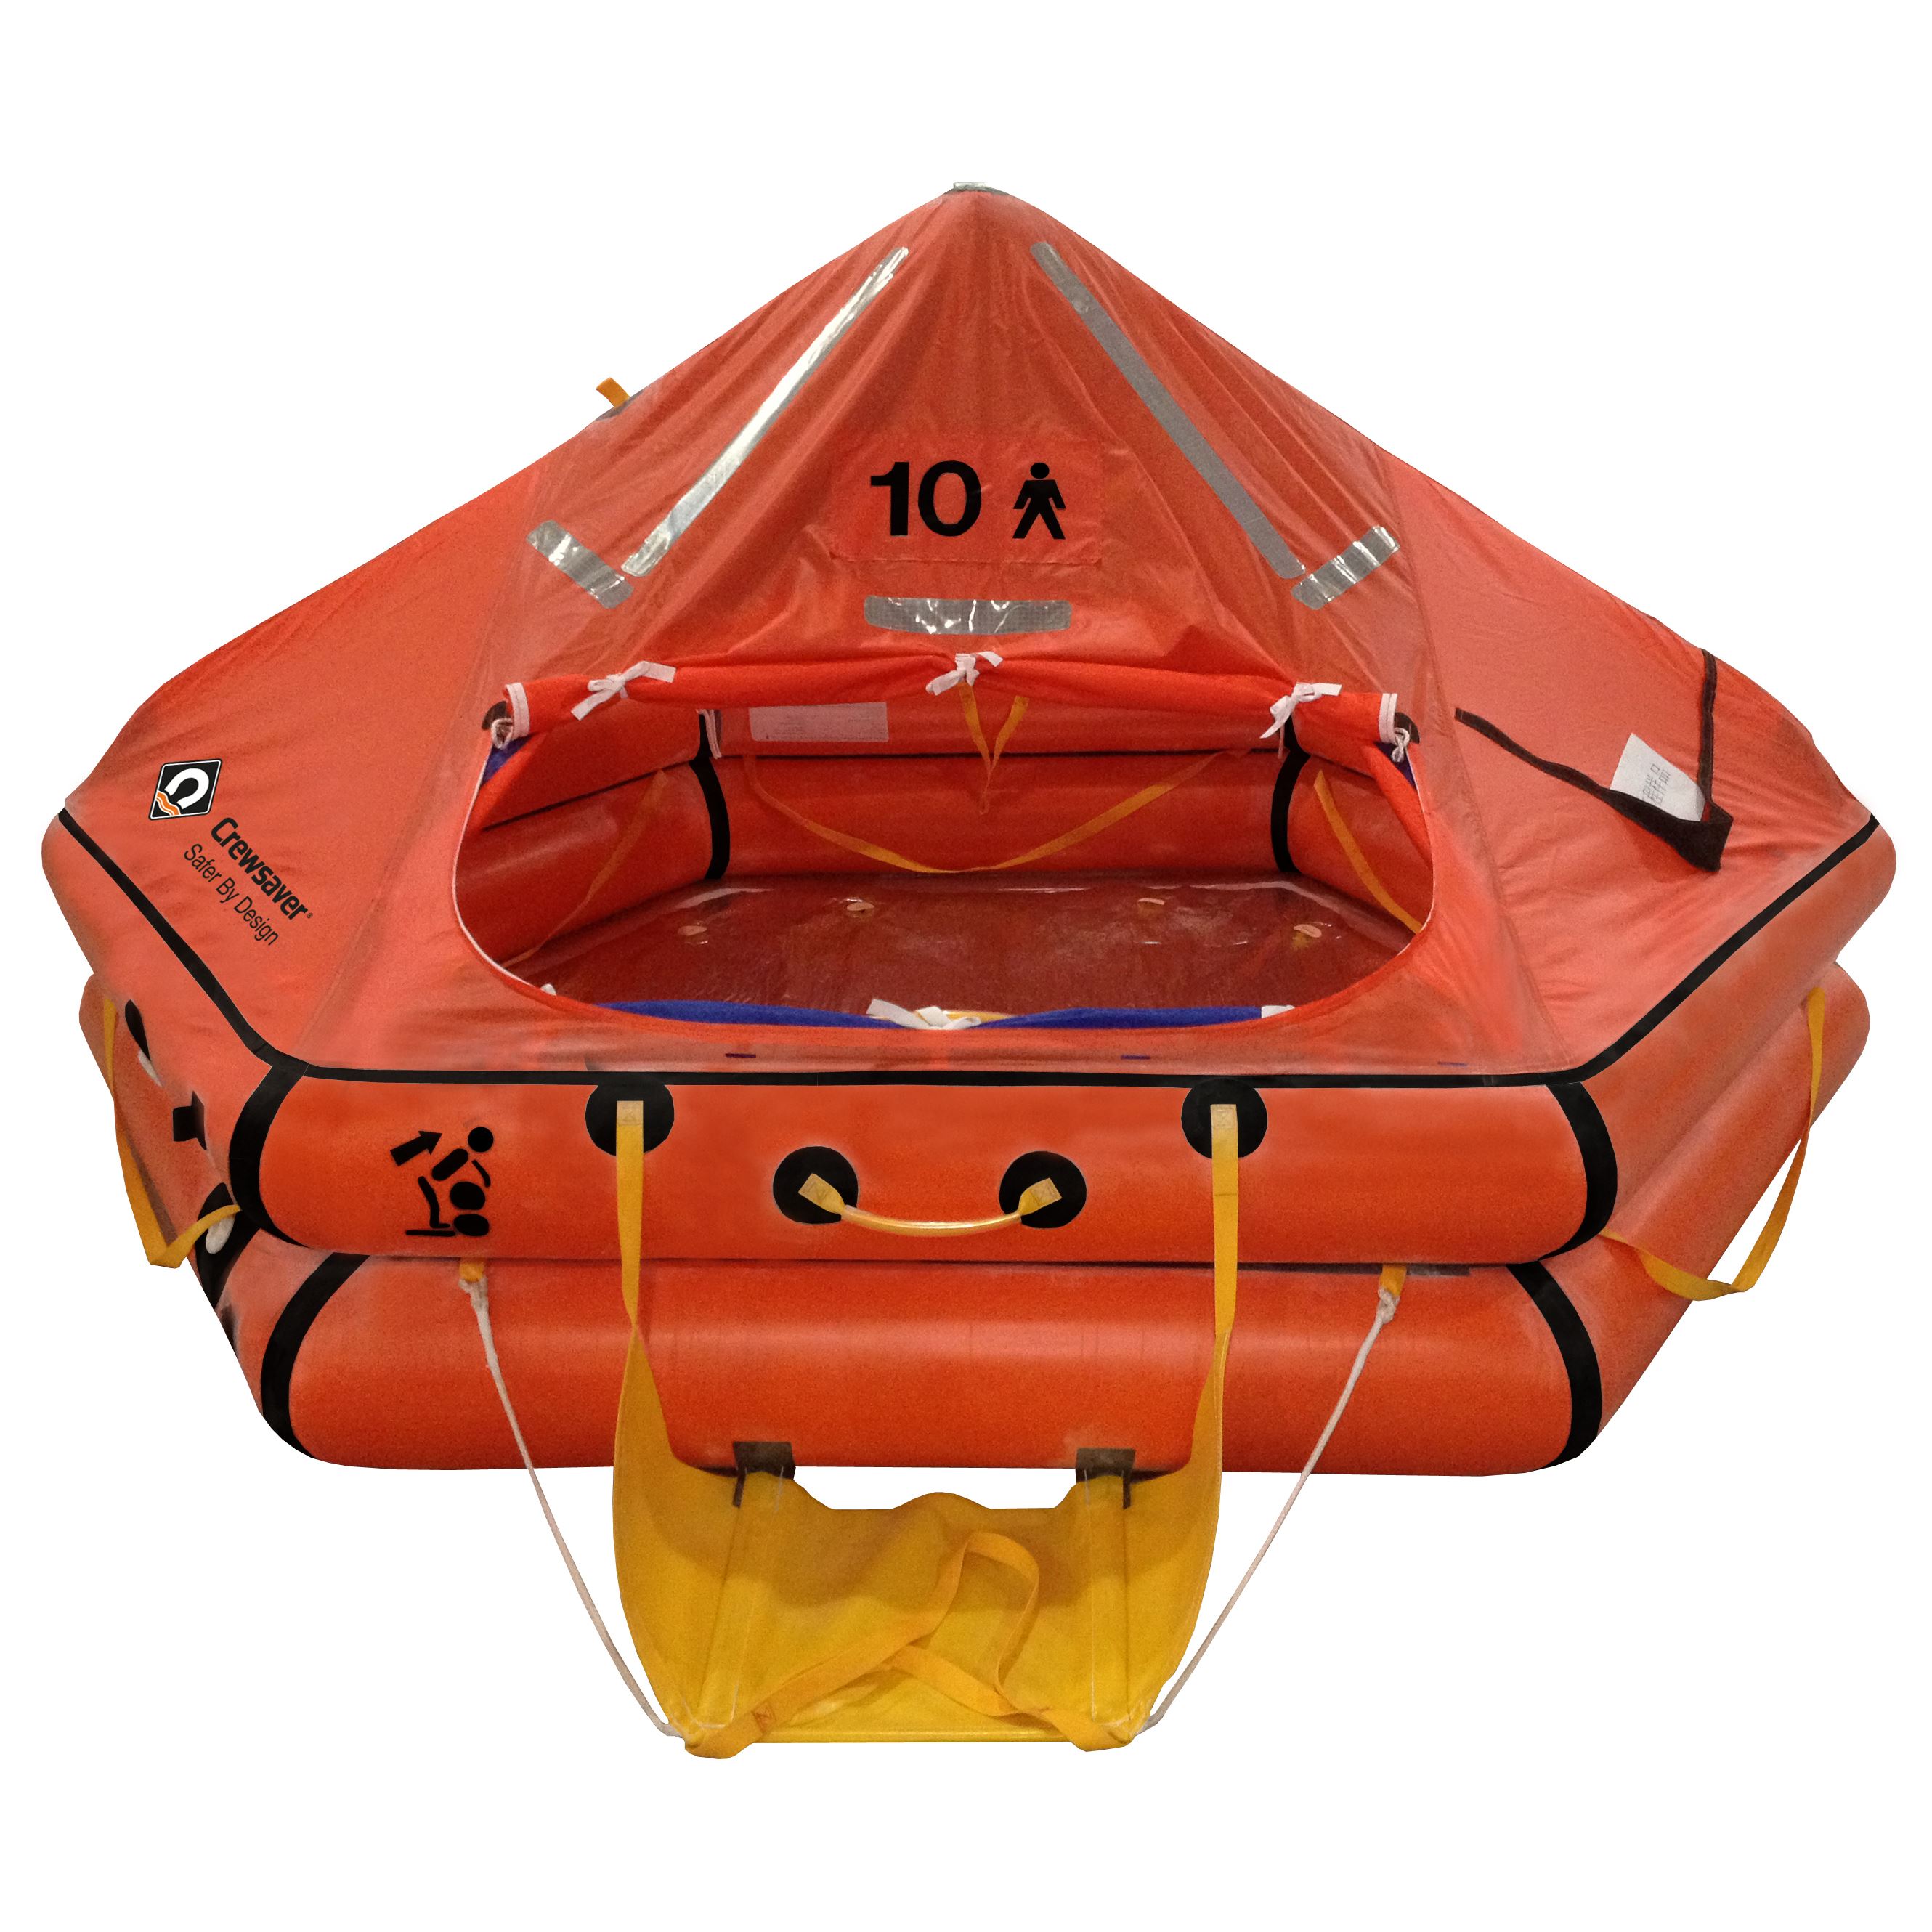 Как называется спасательный плот. Плот спасательный надувной ПСН-10. Плот спасательный надувной ПСН-6. Плот спасательный r0372a101. Плот спасательный надувной ПСН-20.